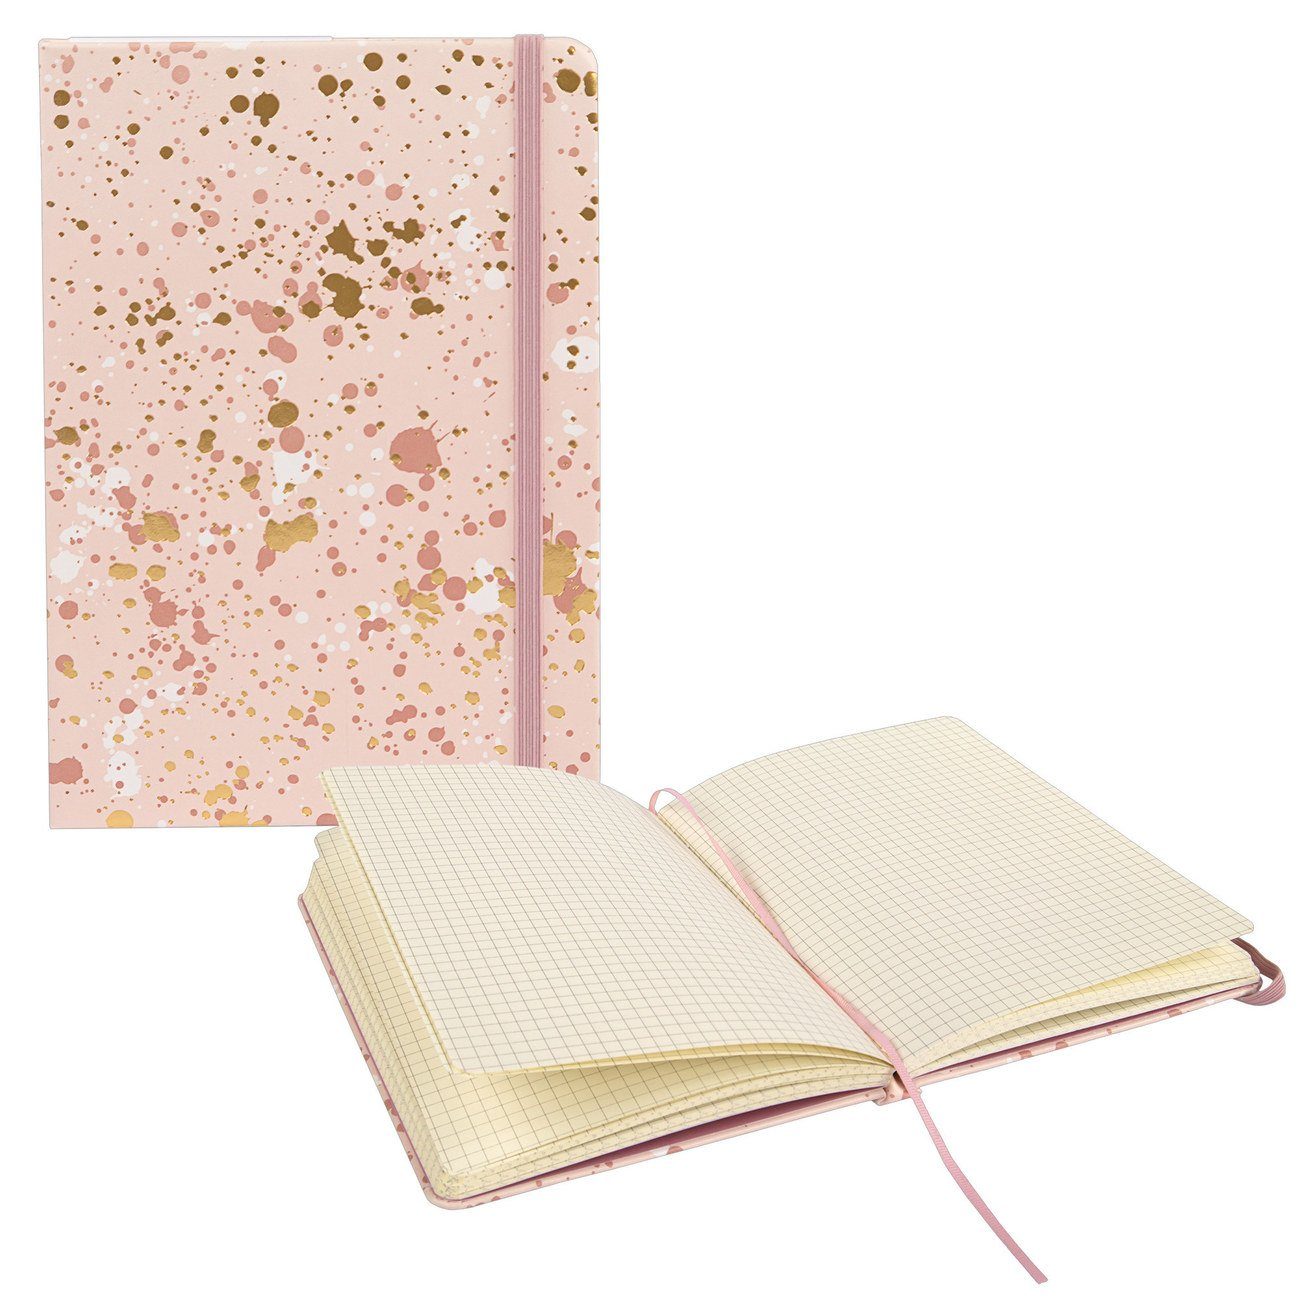 Idena Notizbuch Notizbuch - Notebook - 192 Seiten - kariert - rosé Sparkle